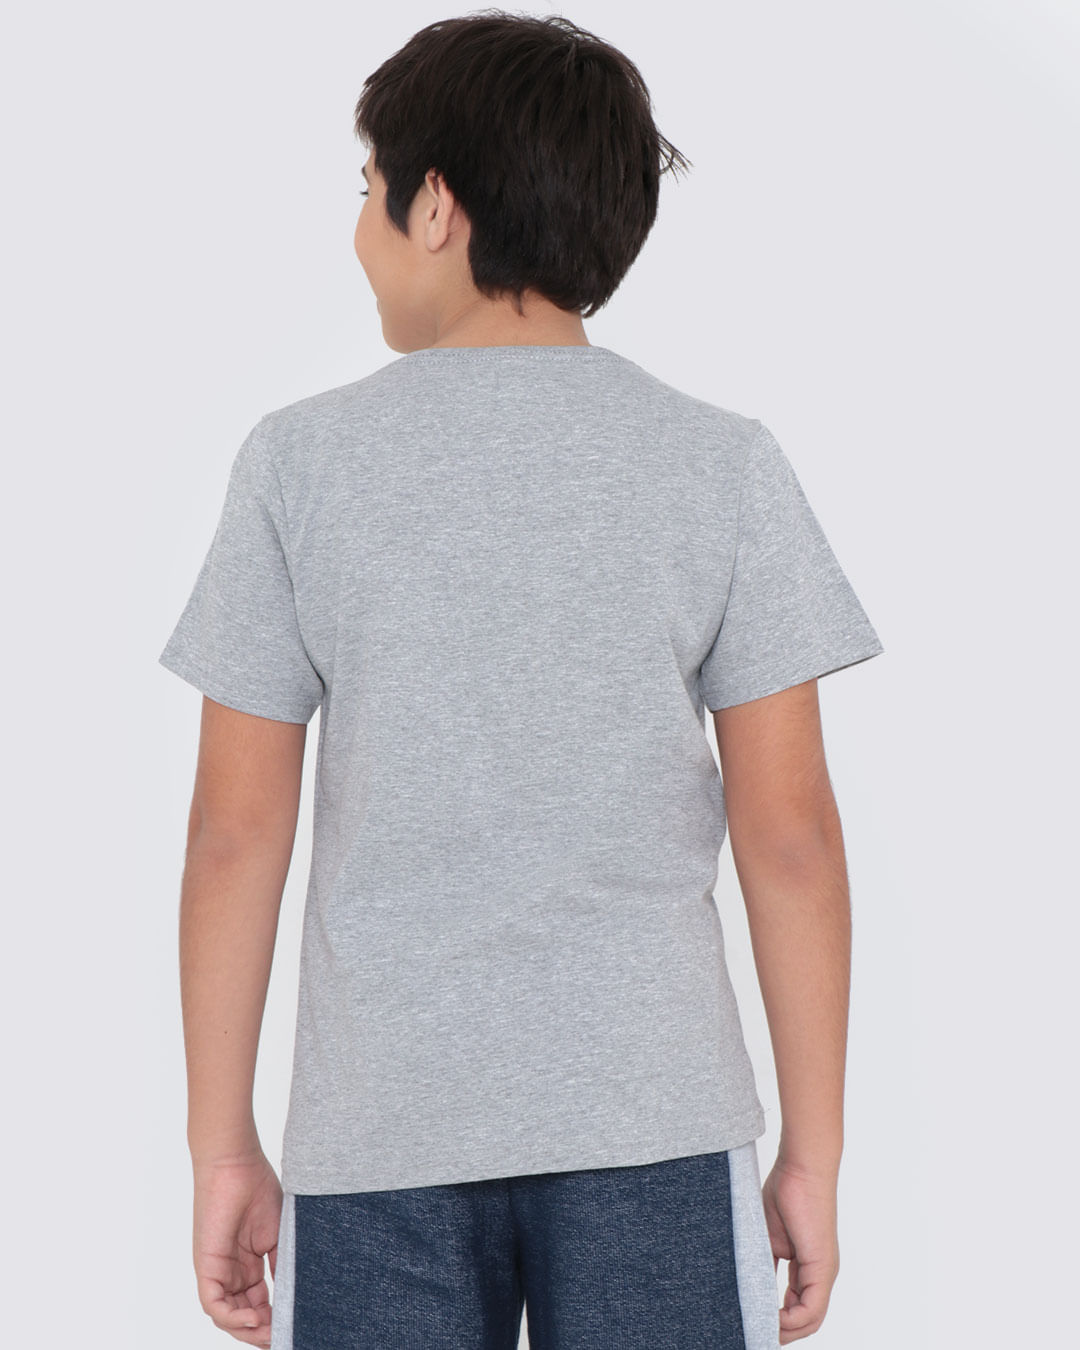 Camiseta-Juvenil-Estampa-Authentic-Cinza